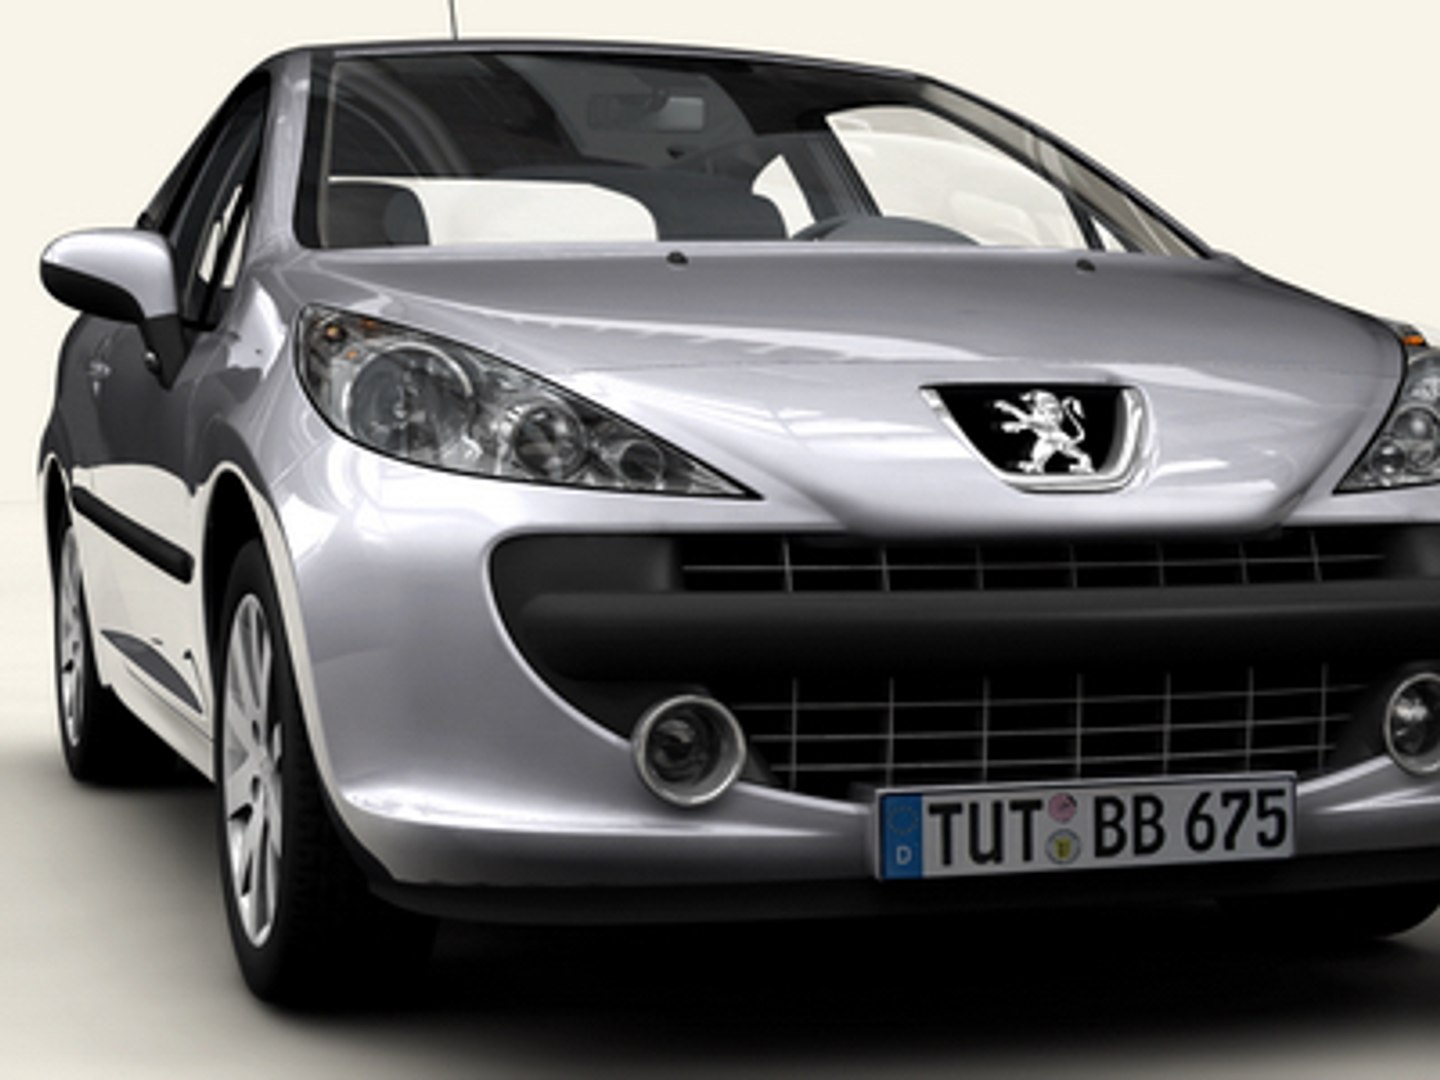 Netherlands 2007-2008: Peugeot 207 most popular – Best Selling